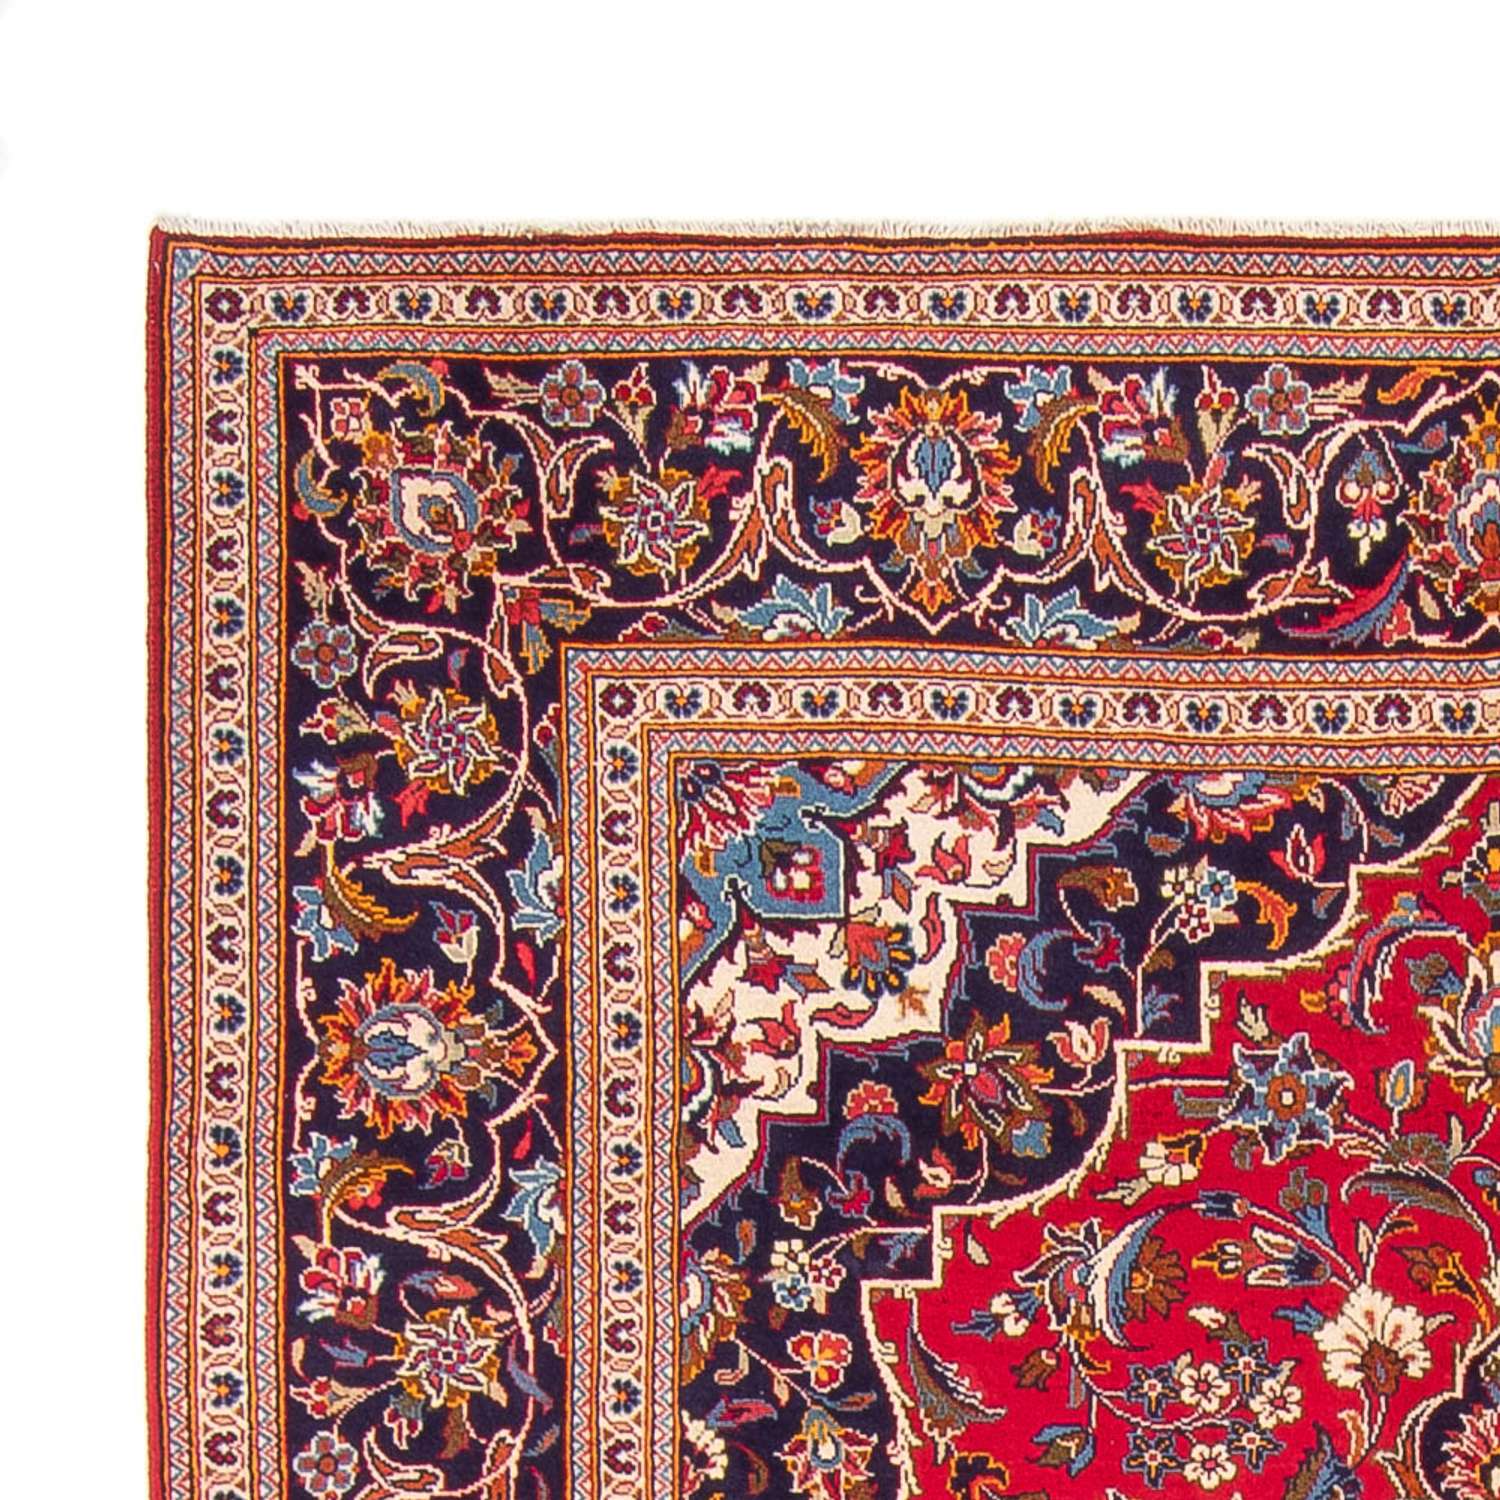 Tapete persa - Keshan - 293 x 195 cm - vermelho